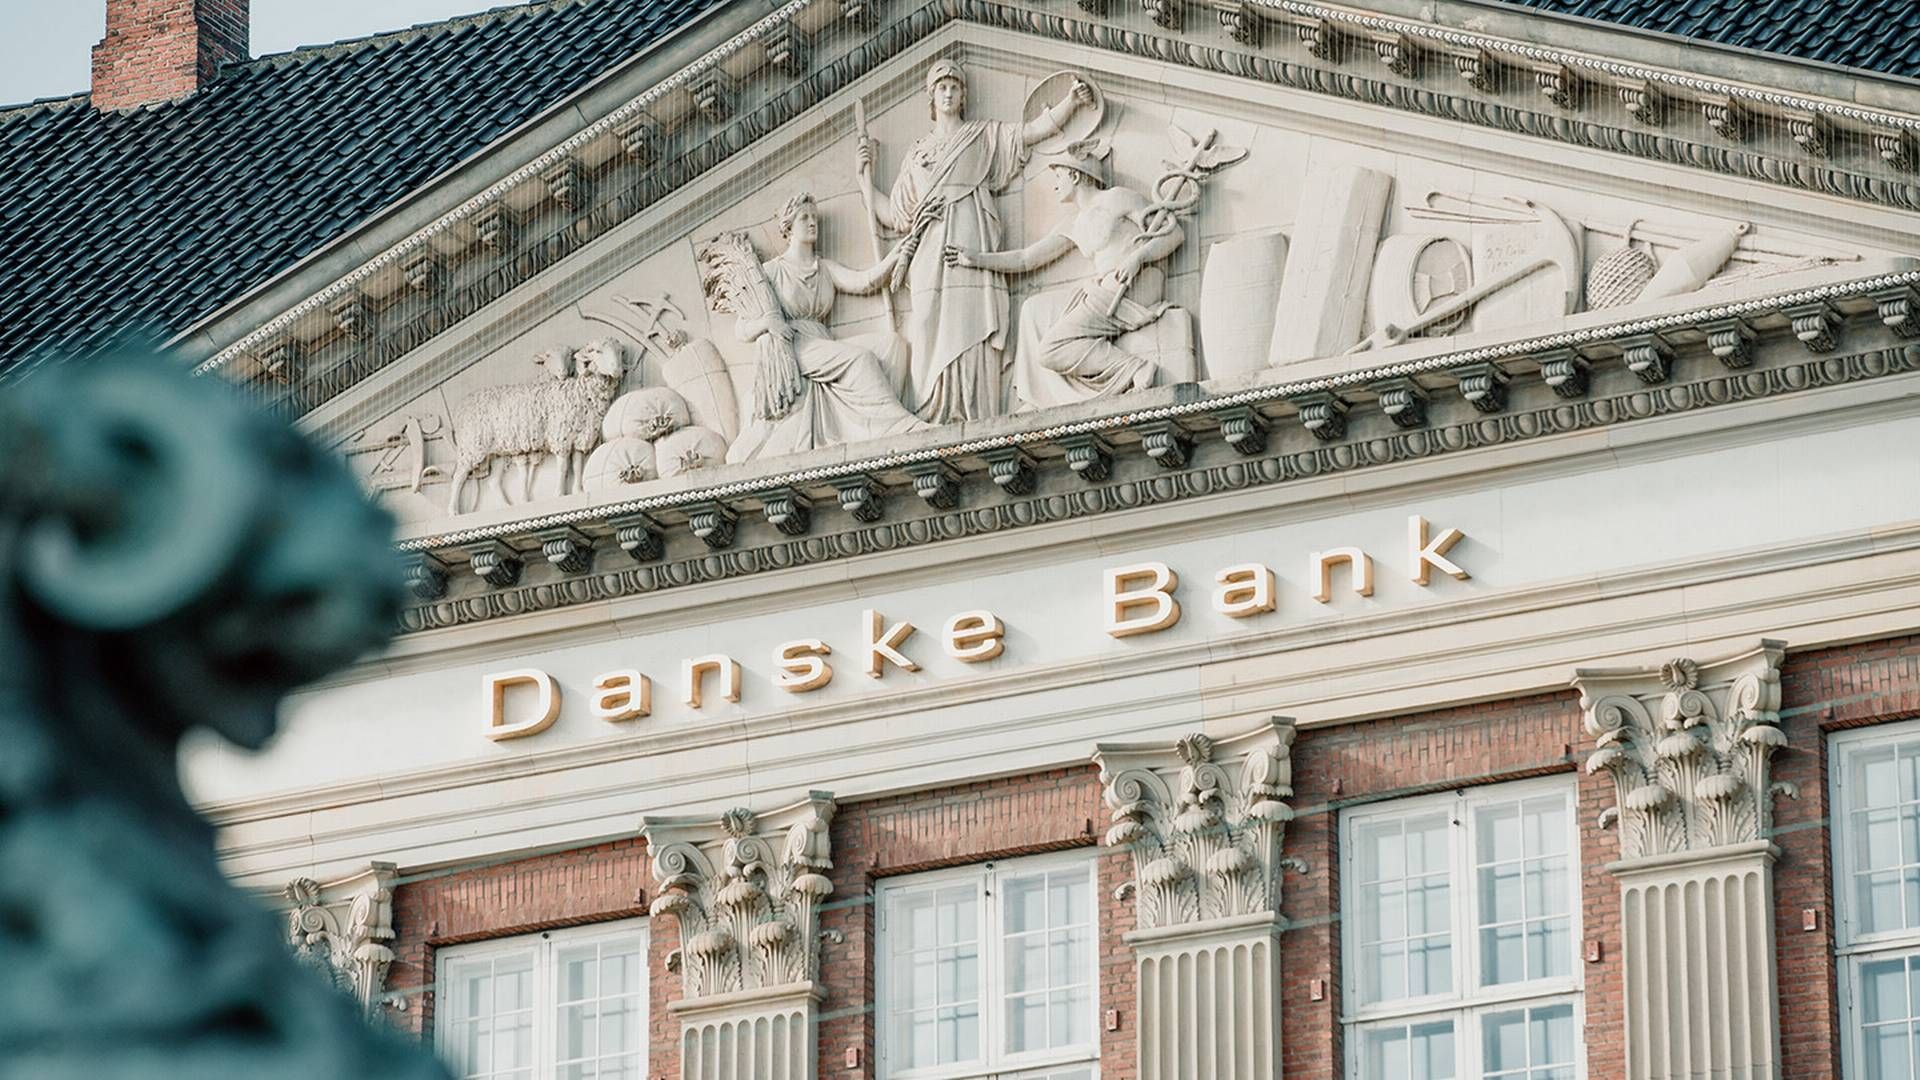 Danske Bank fremlagde i januar en klimaplan. Få danskere ser banken som en bidragsyder, når det kommer til klima, viser målinger. | Foto: Philip Madsen